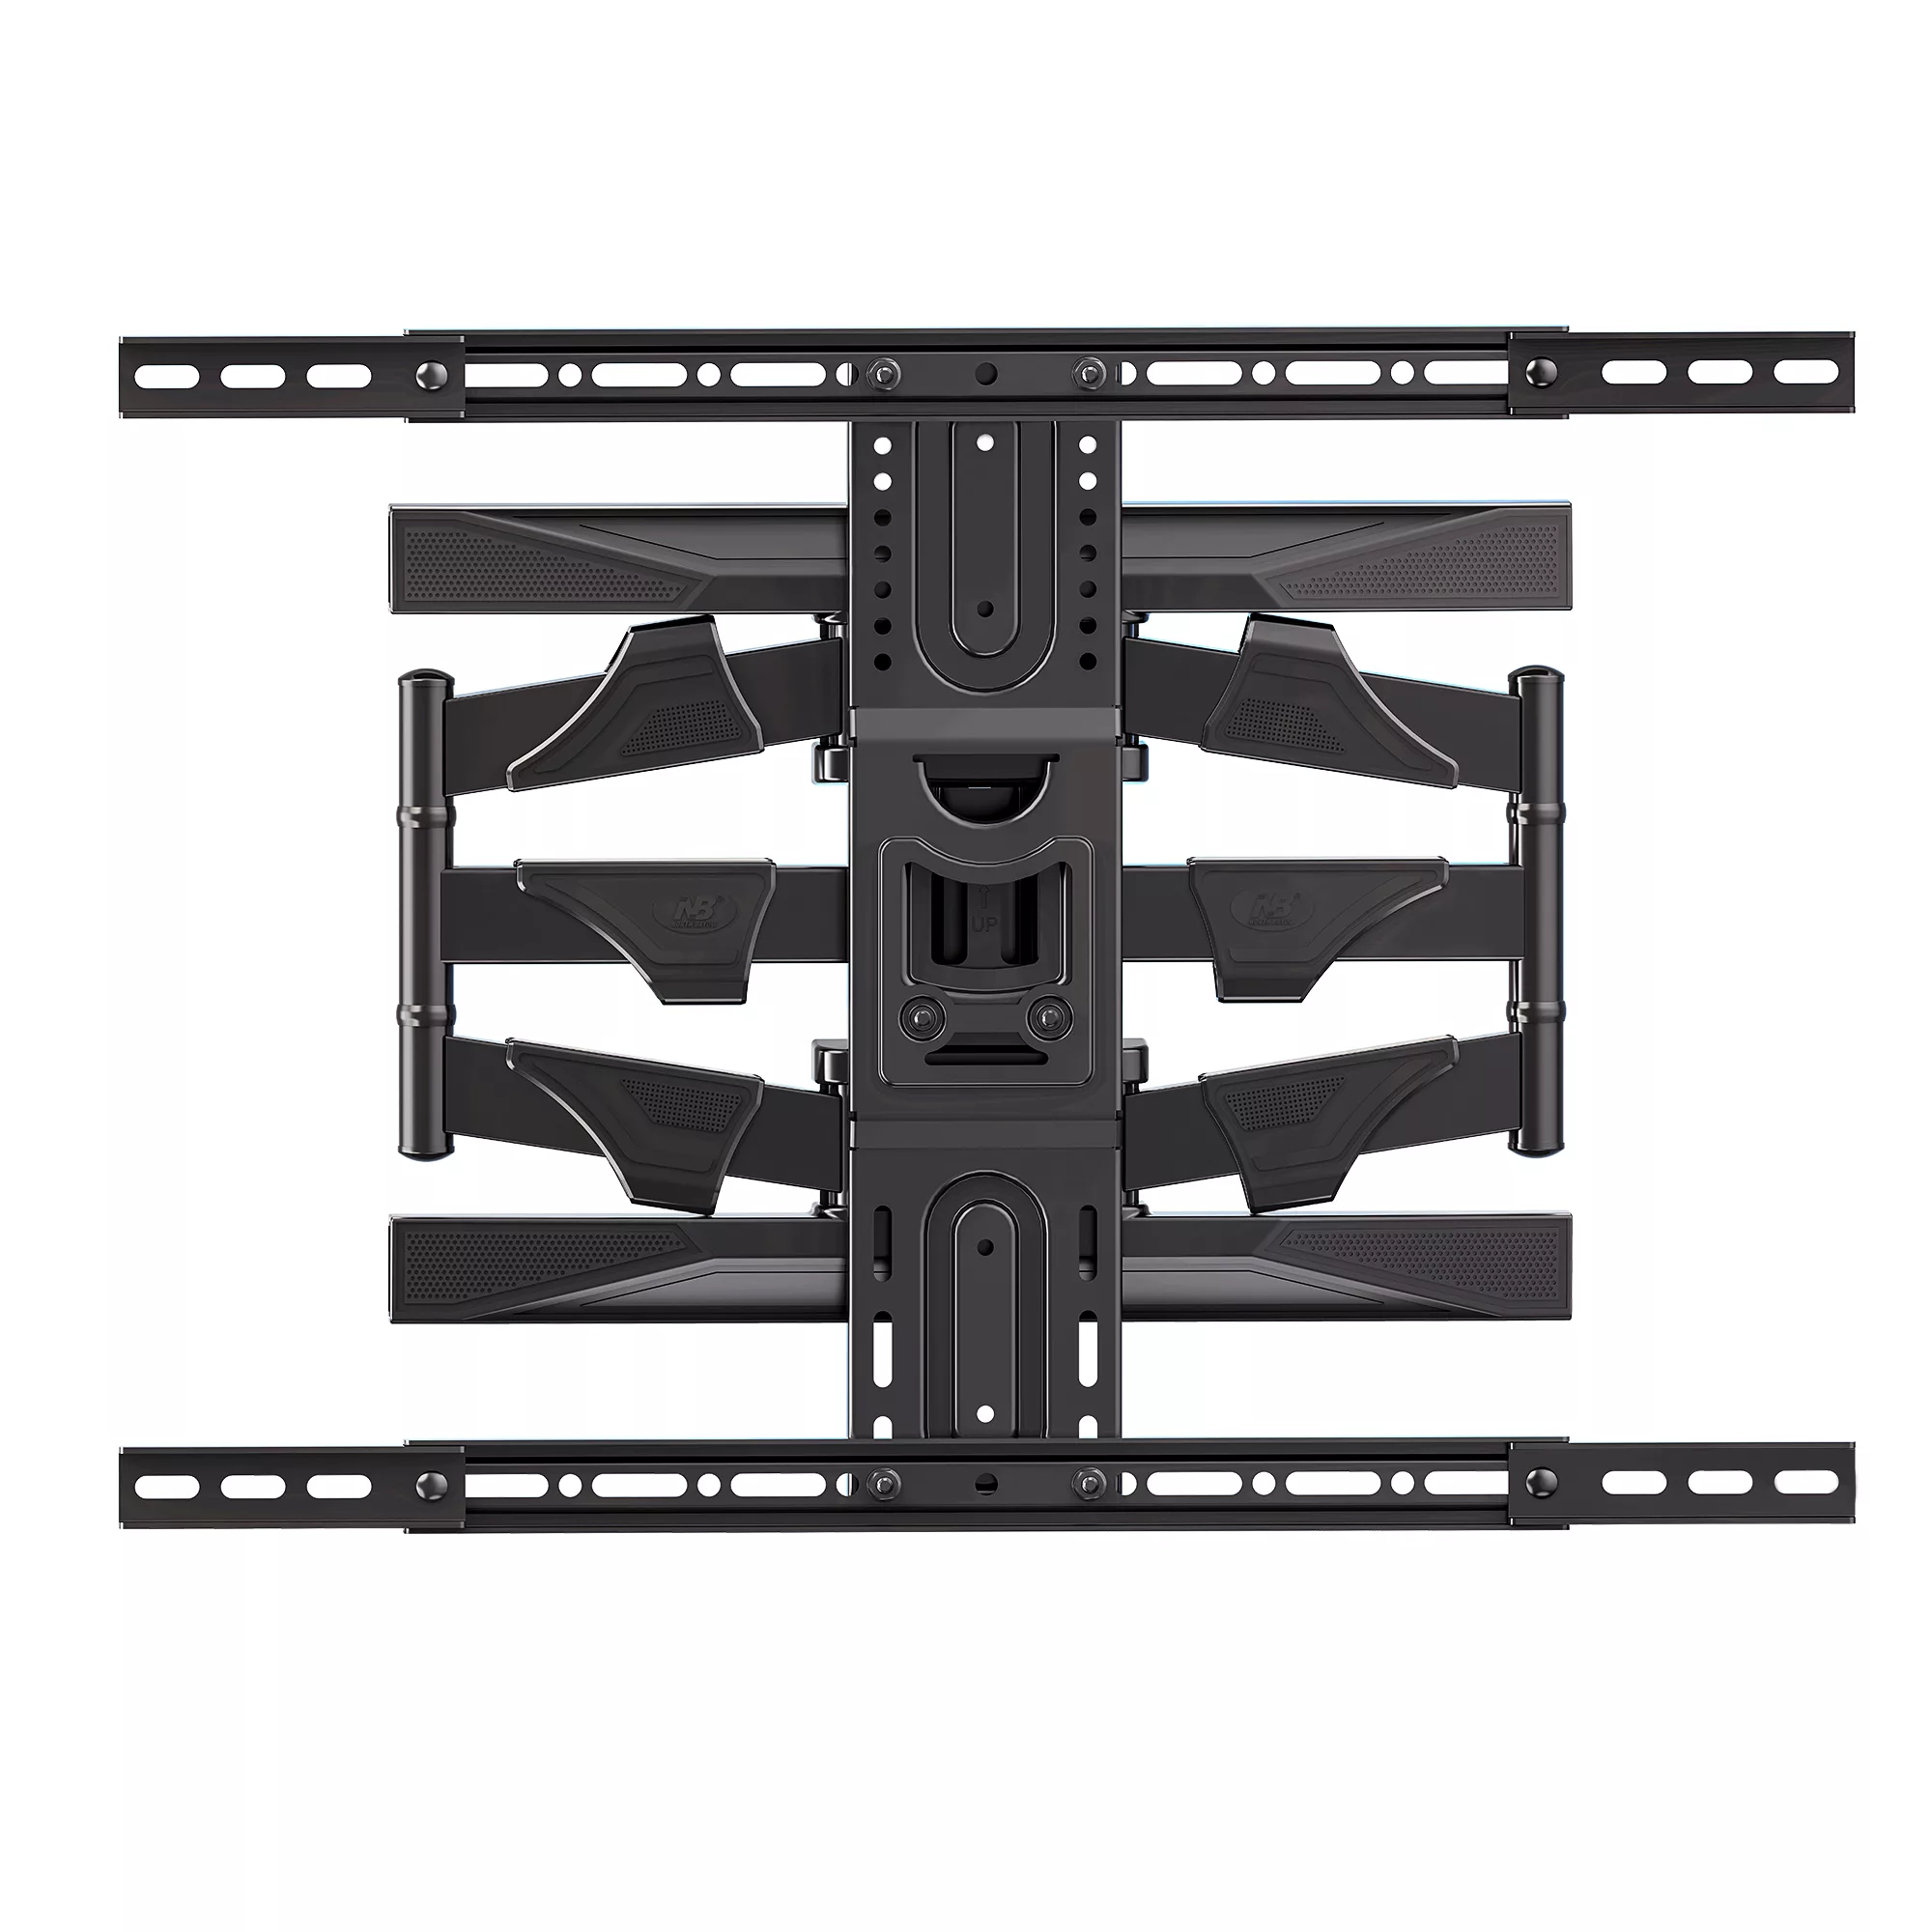 שחור זרוע דו מפרקית לגודל מסך עד "80 – מוצר קצר מערכת הרכבה מודולרית לקיר עם זרוע מסך בגודל 80 אינץ' על רקע לבן.